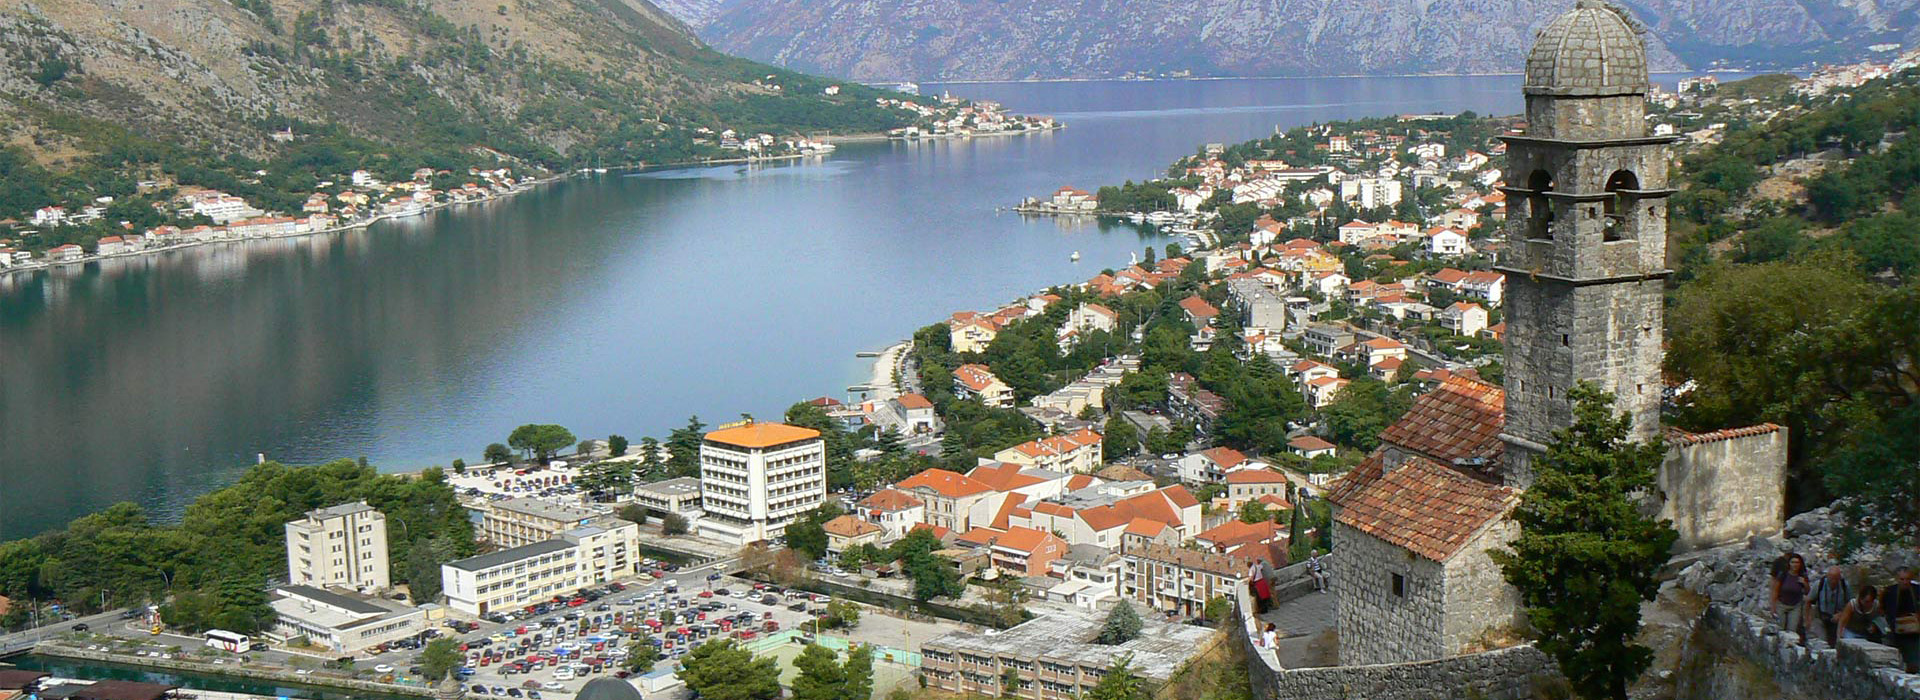 Montenegro walking self-guided holiday - Kotor